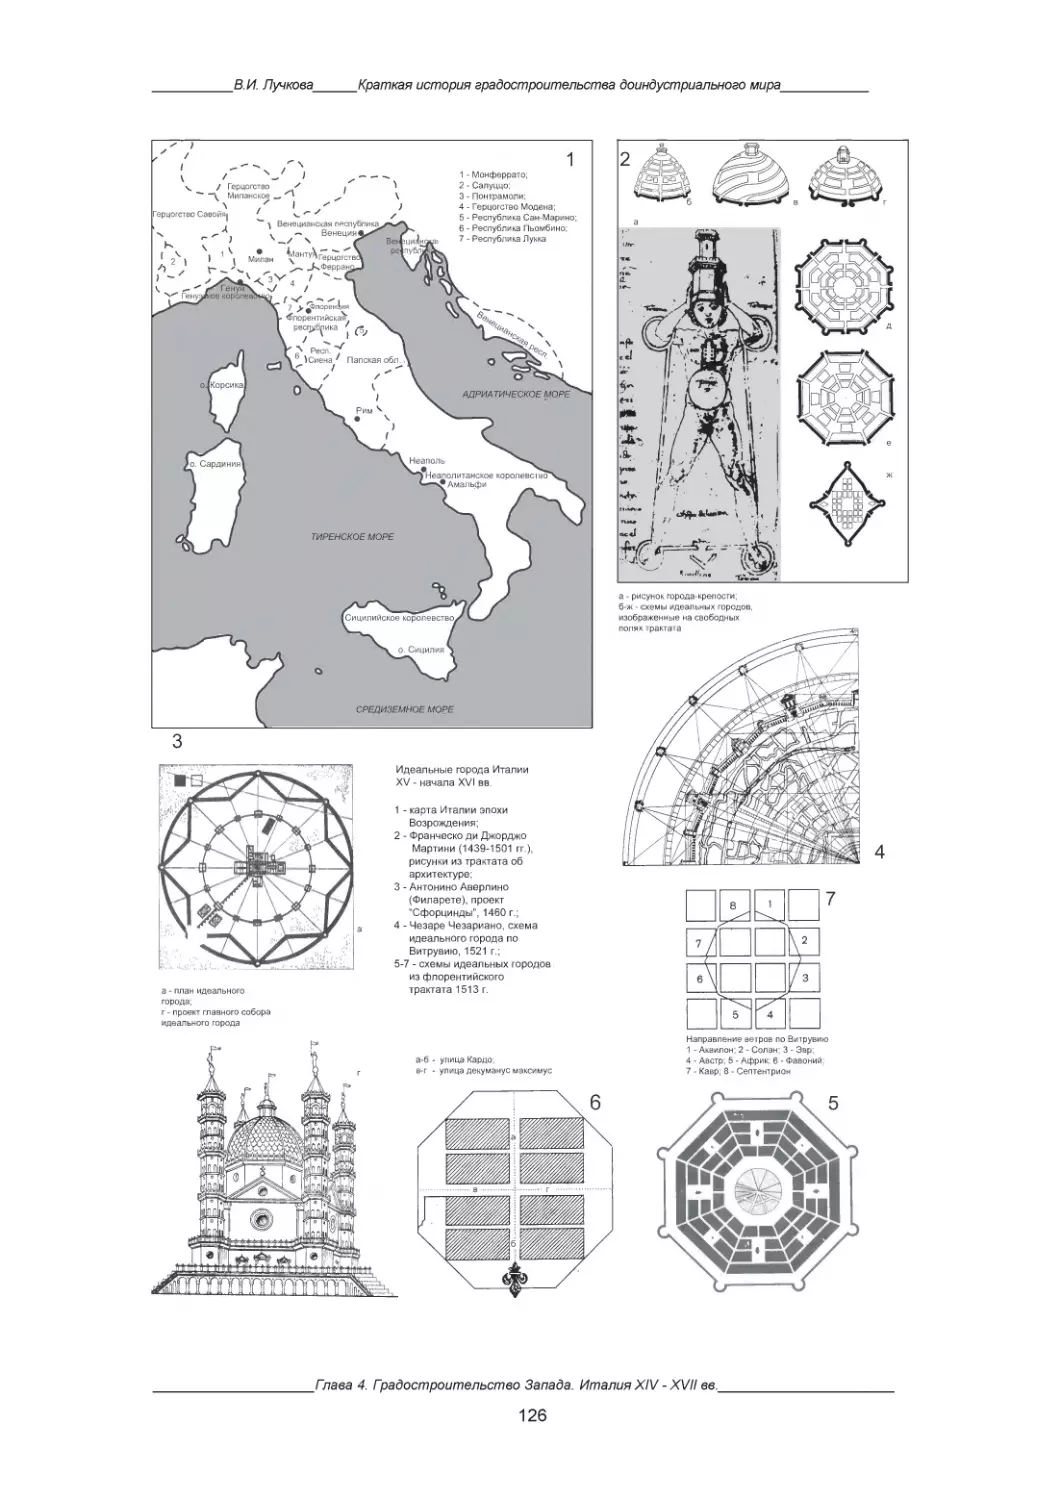 3. Италия XIV-XVII вв